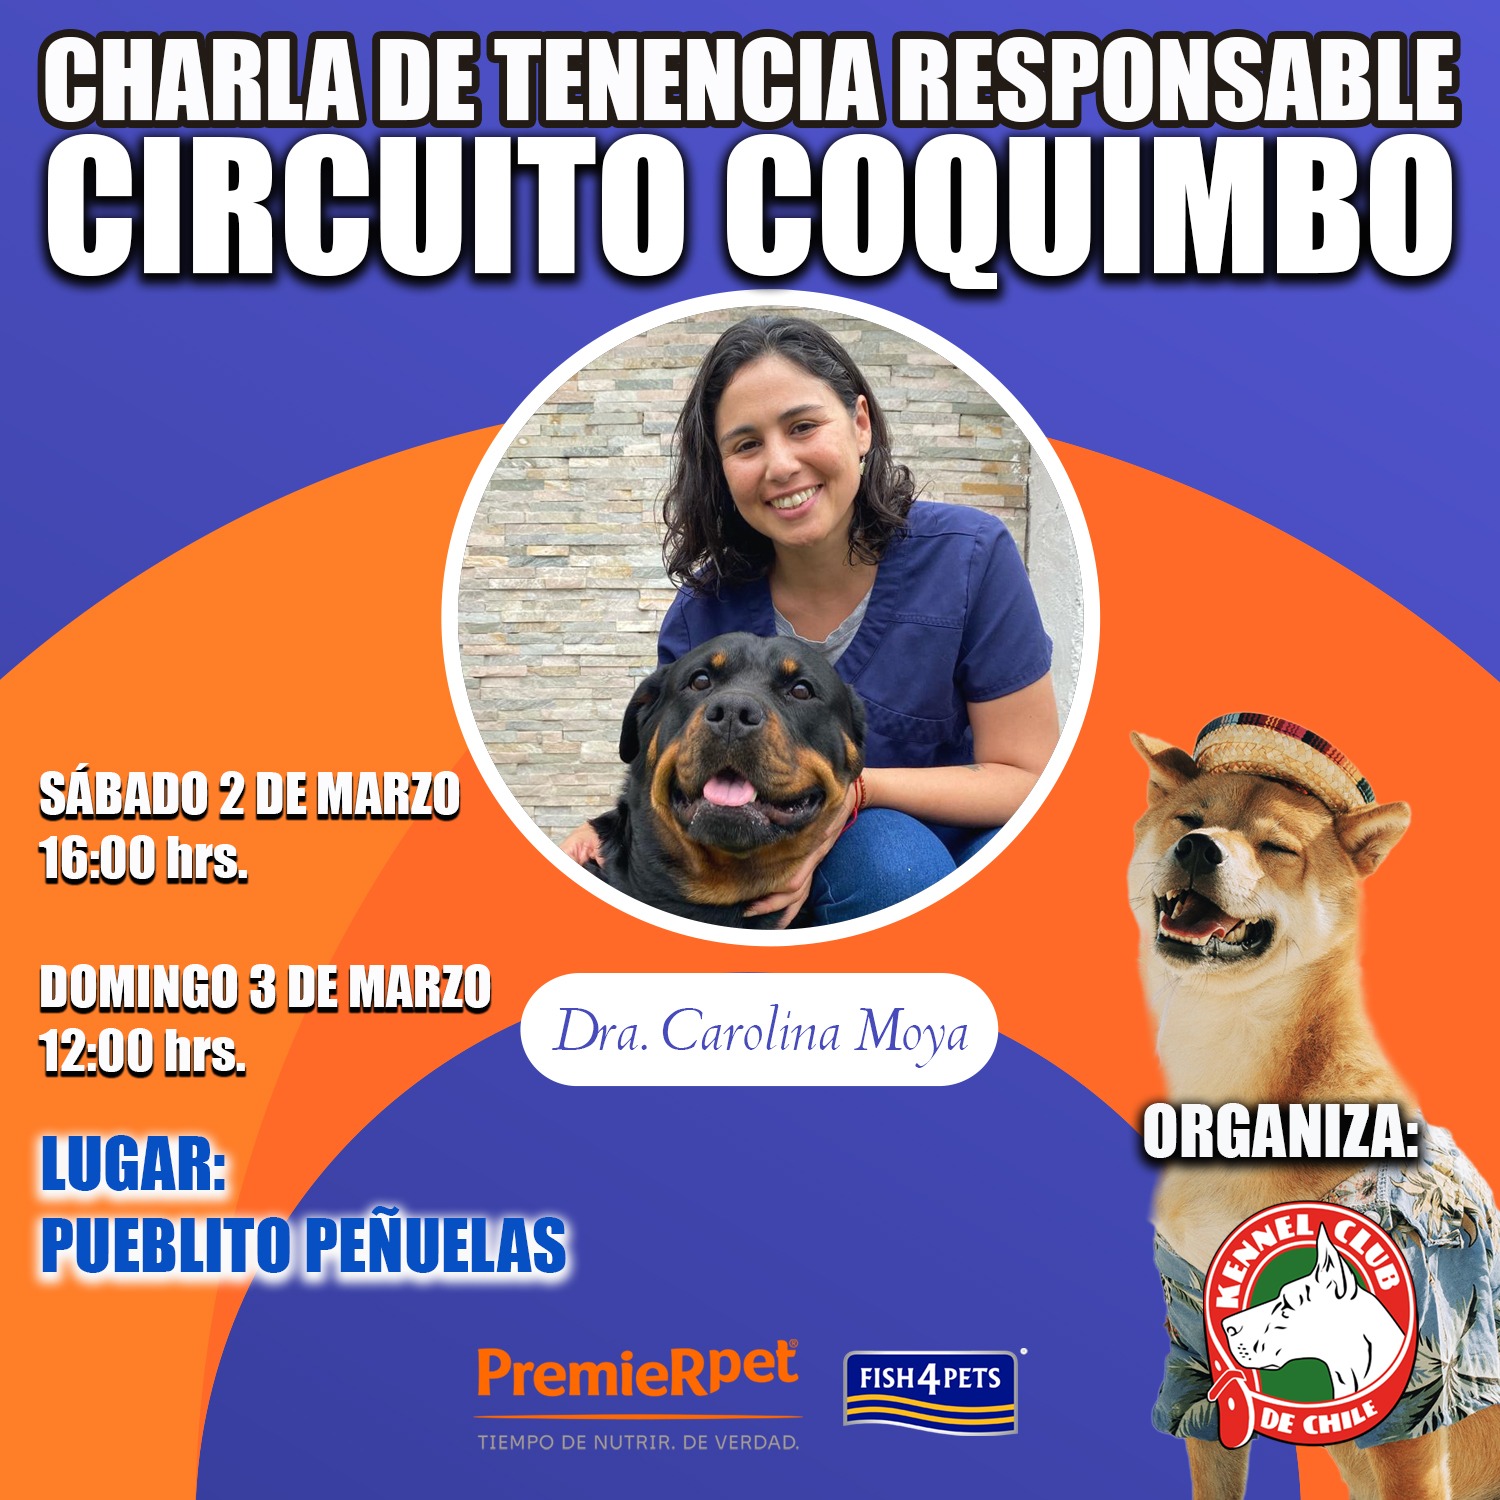 CHARLA DE TENENCIA RESPONSABLE,  CIRCUITO COQUIMBO.